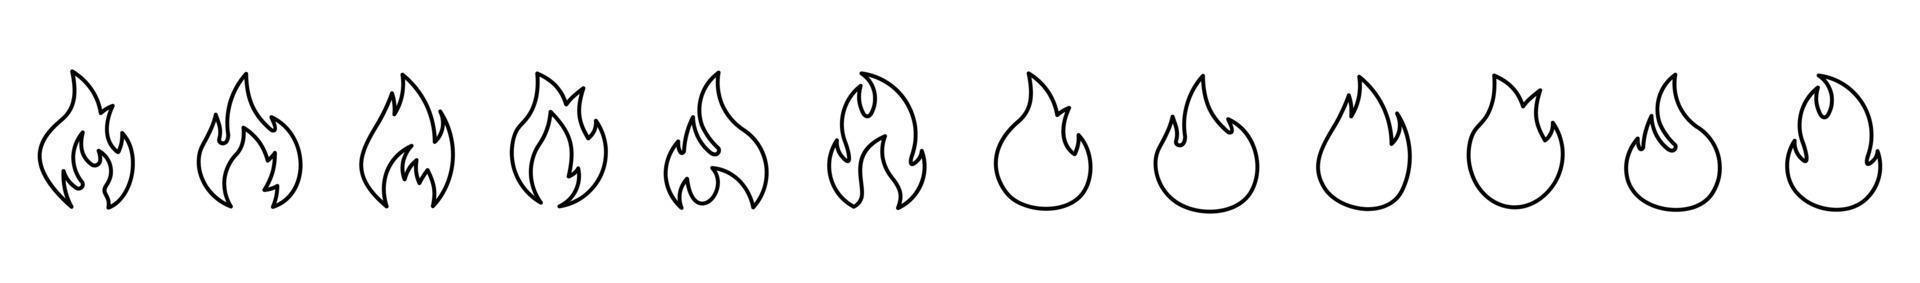 douze flammes de différentes formes feu de joie illustration vectorielle arrière-plan blanc ensemble d'icônes de ligne plate de feu vecteur